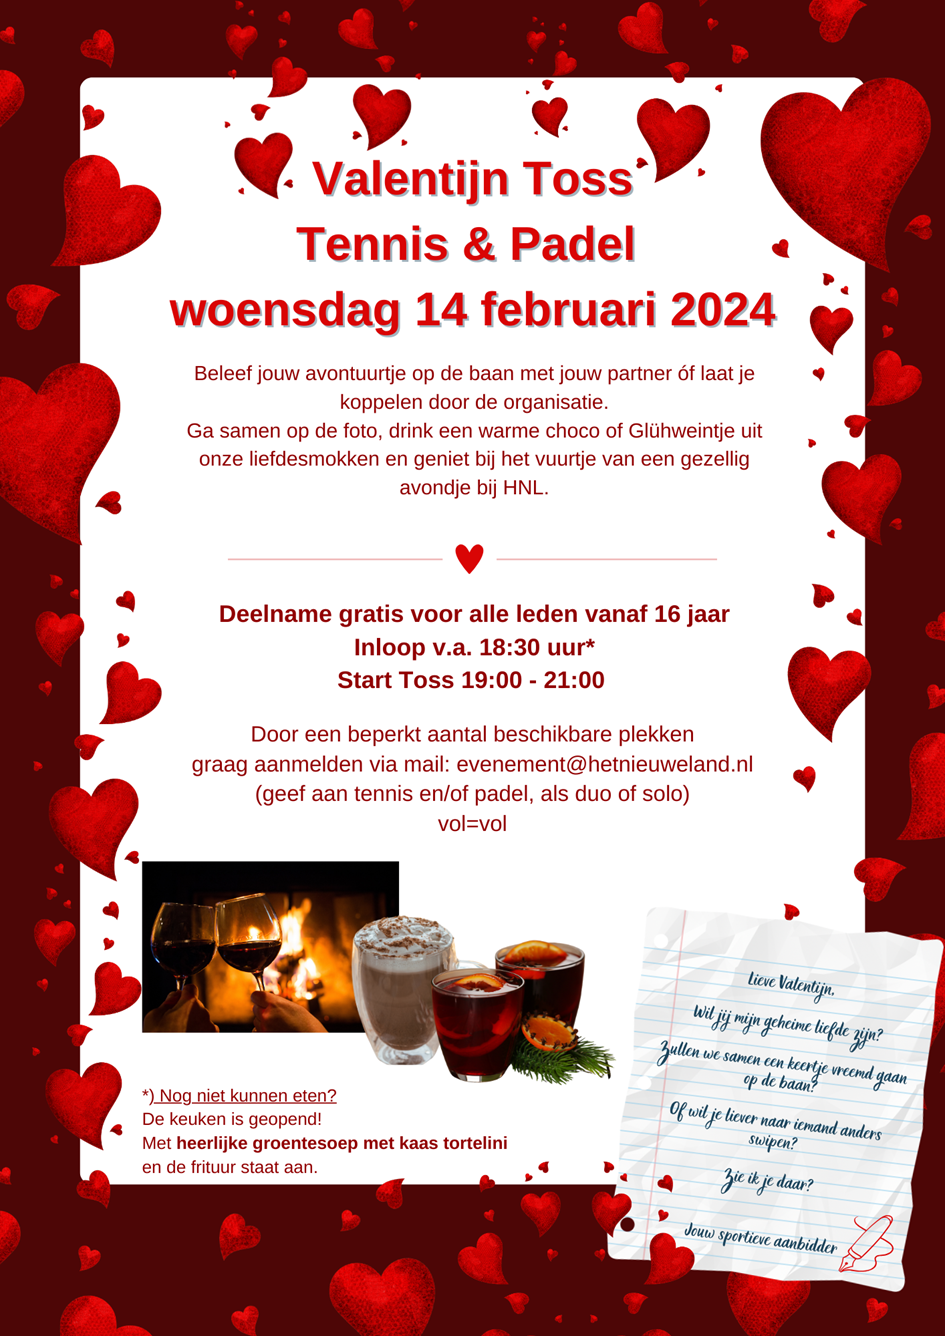 Valentijn Toss Tennis & Padel woensdag 14 februari 2024.png